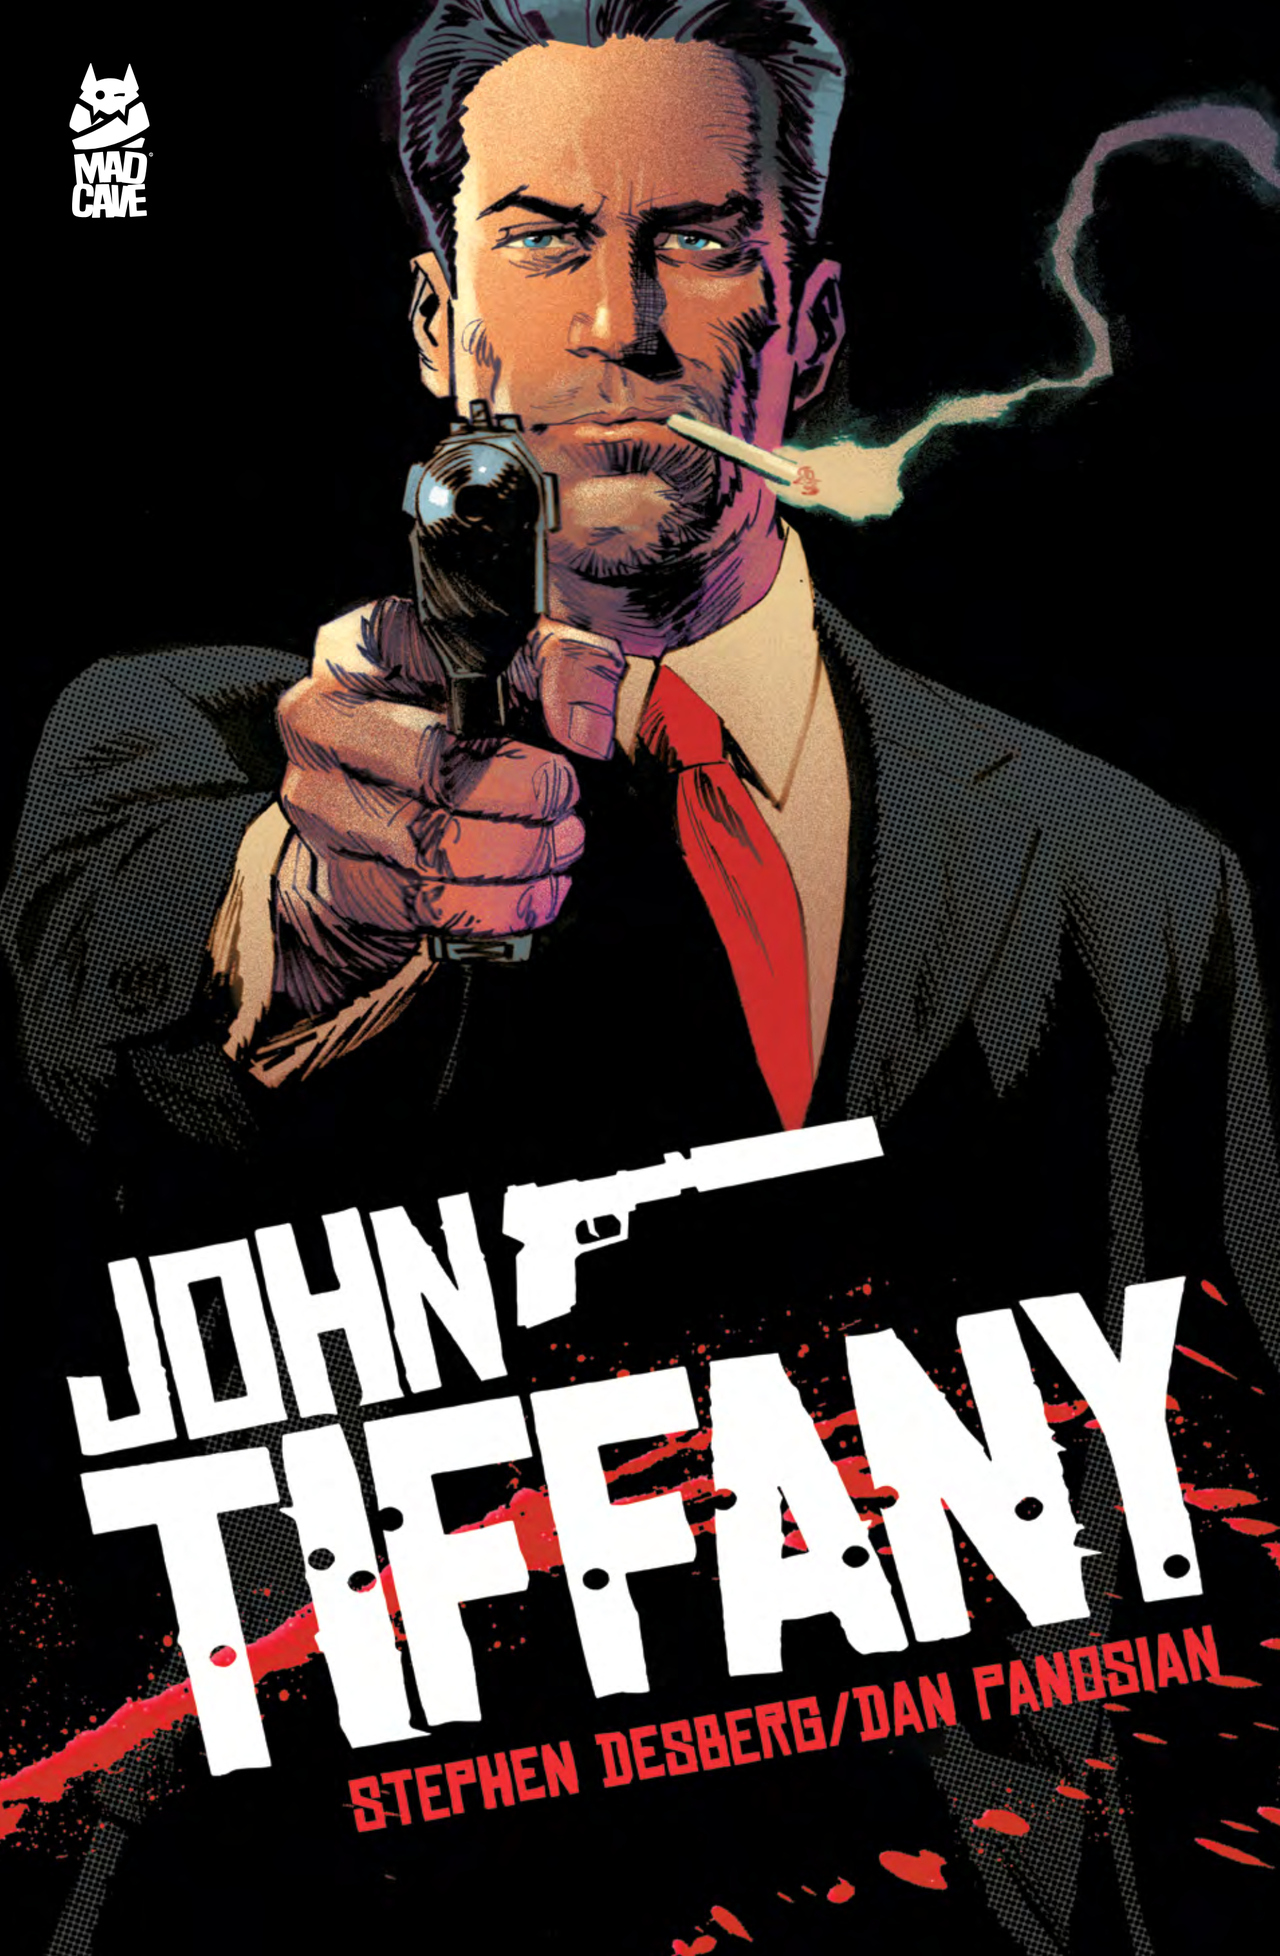 Read online John Tiffany comic -  Issue # TPB - 1